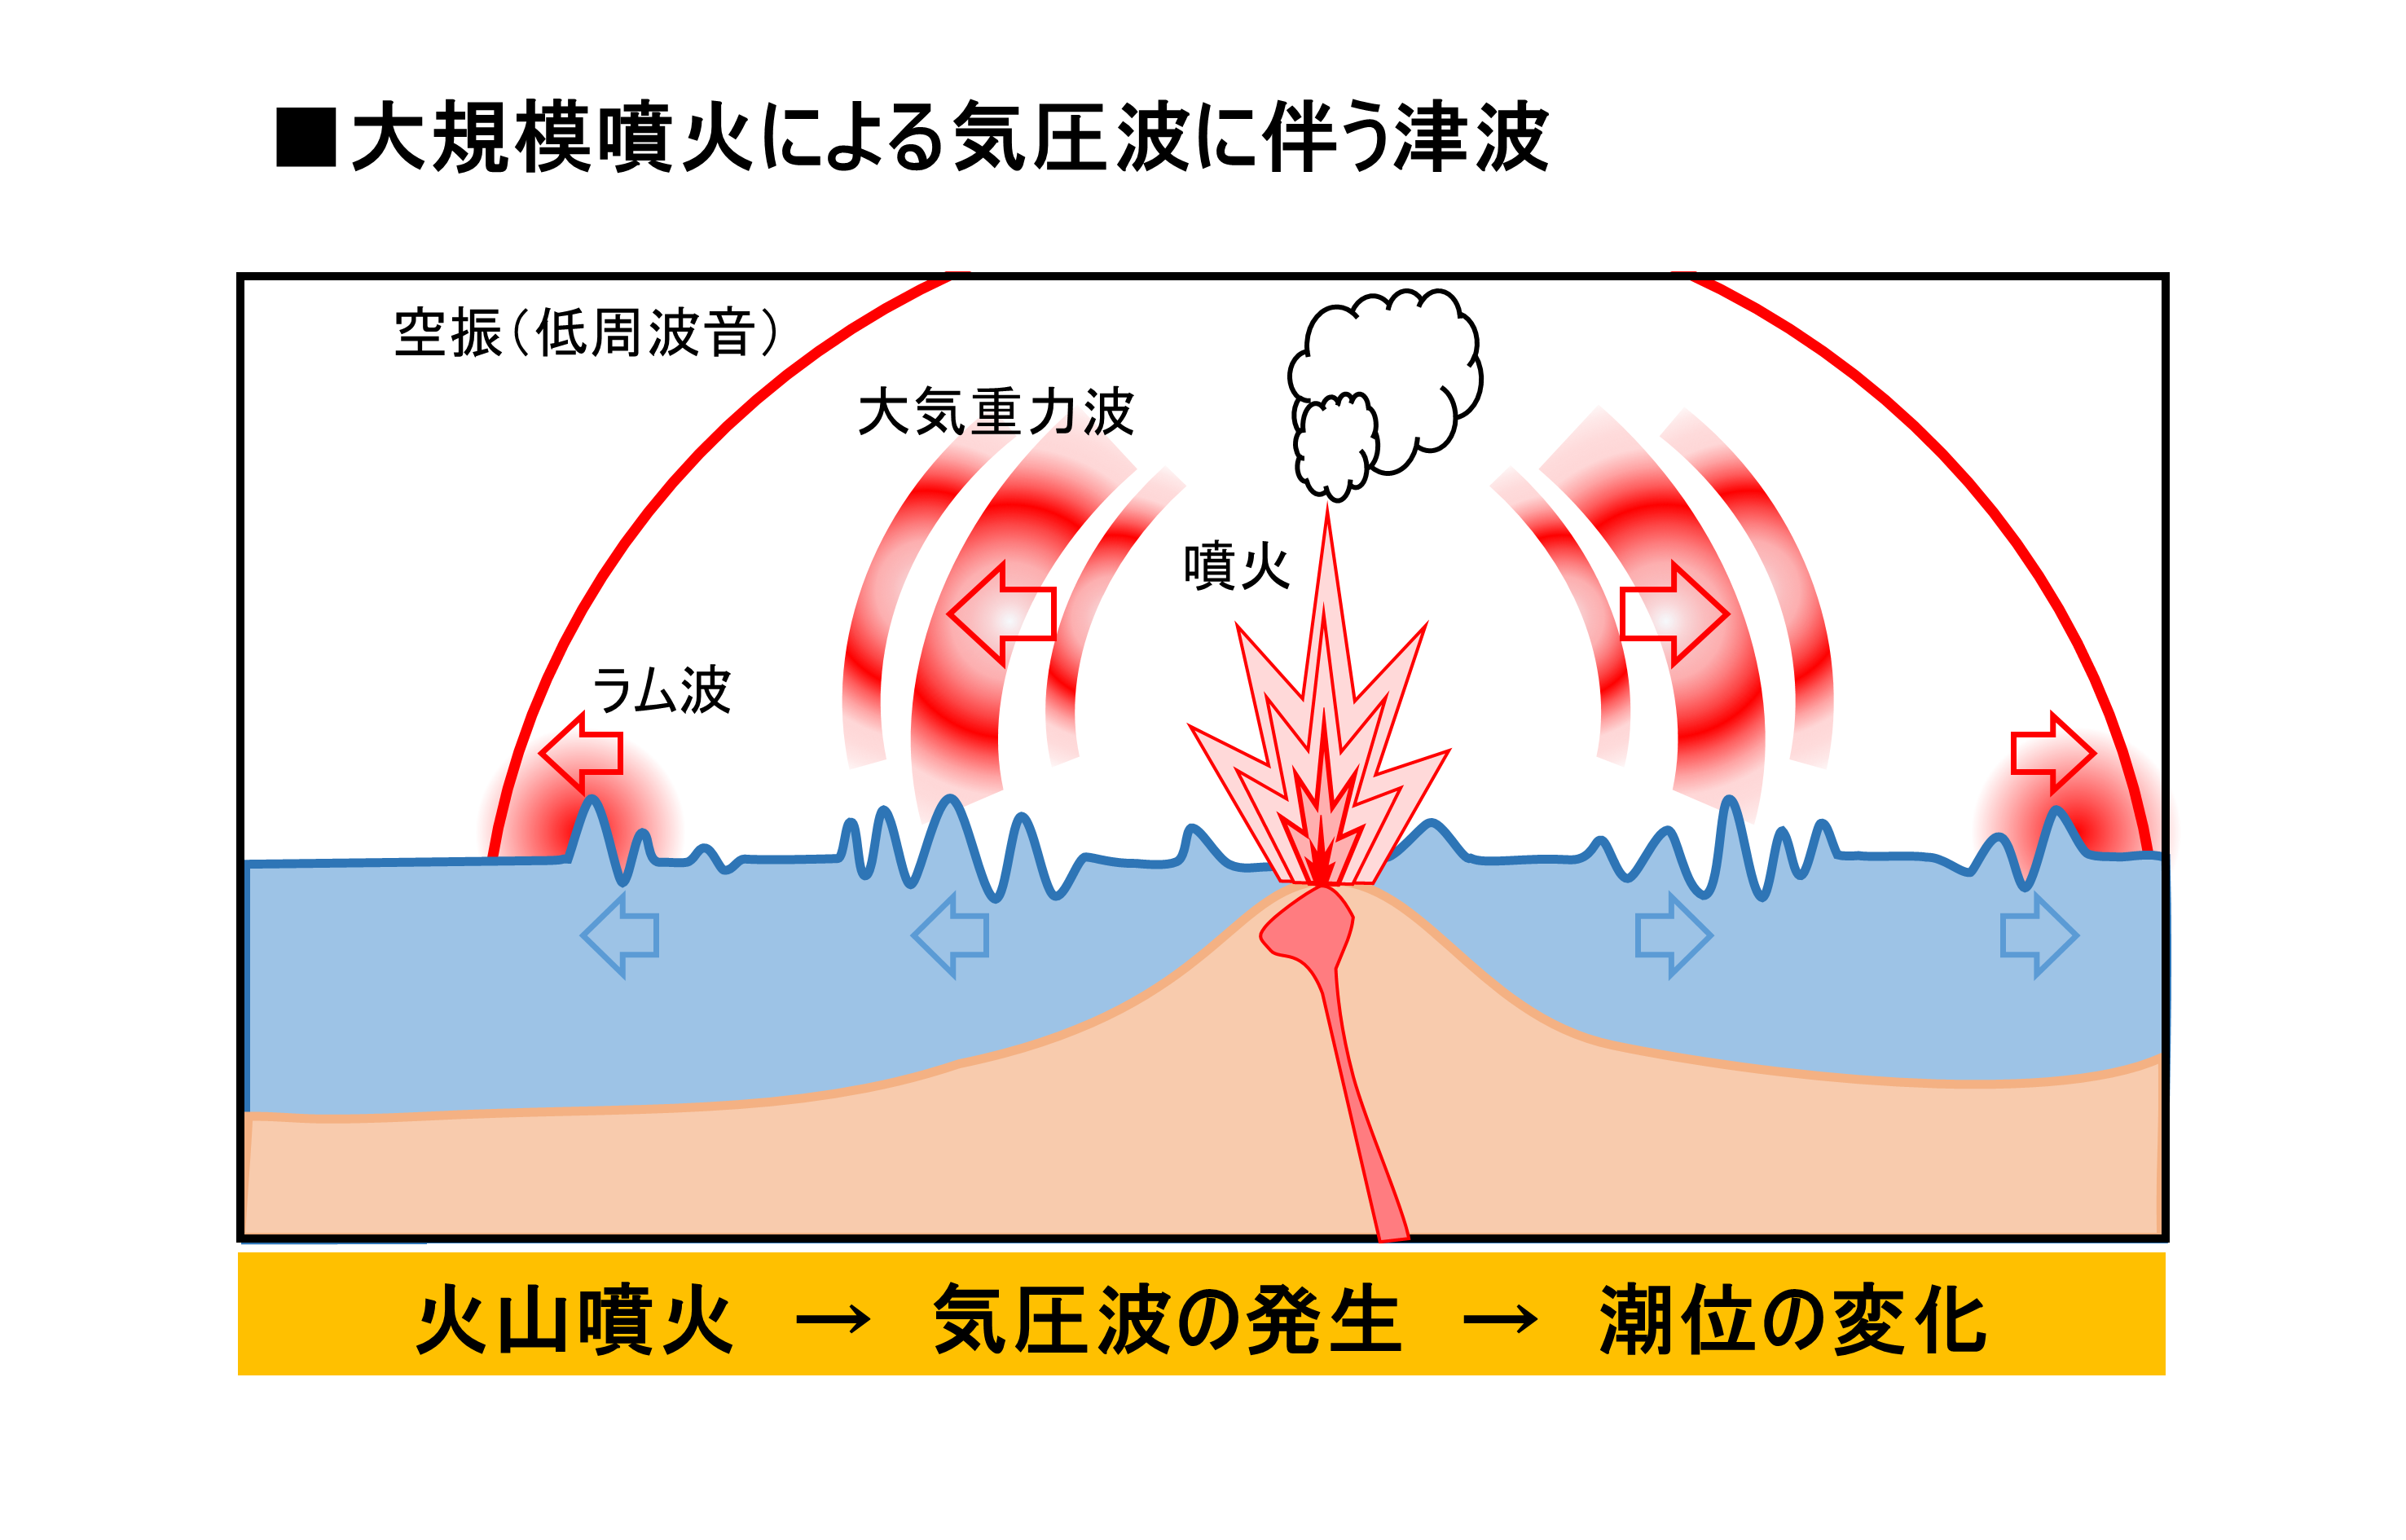 大規模噴火による気圧波に伴う津波